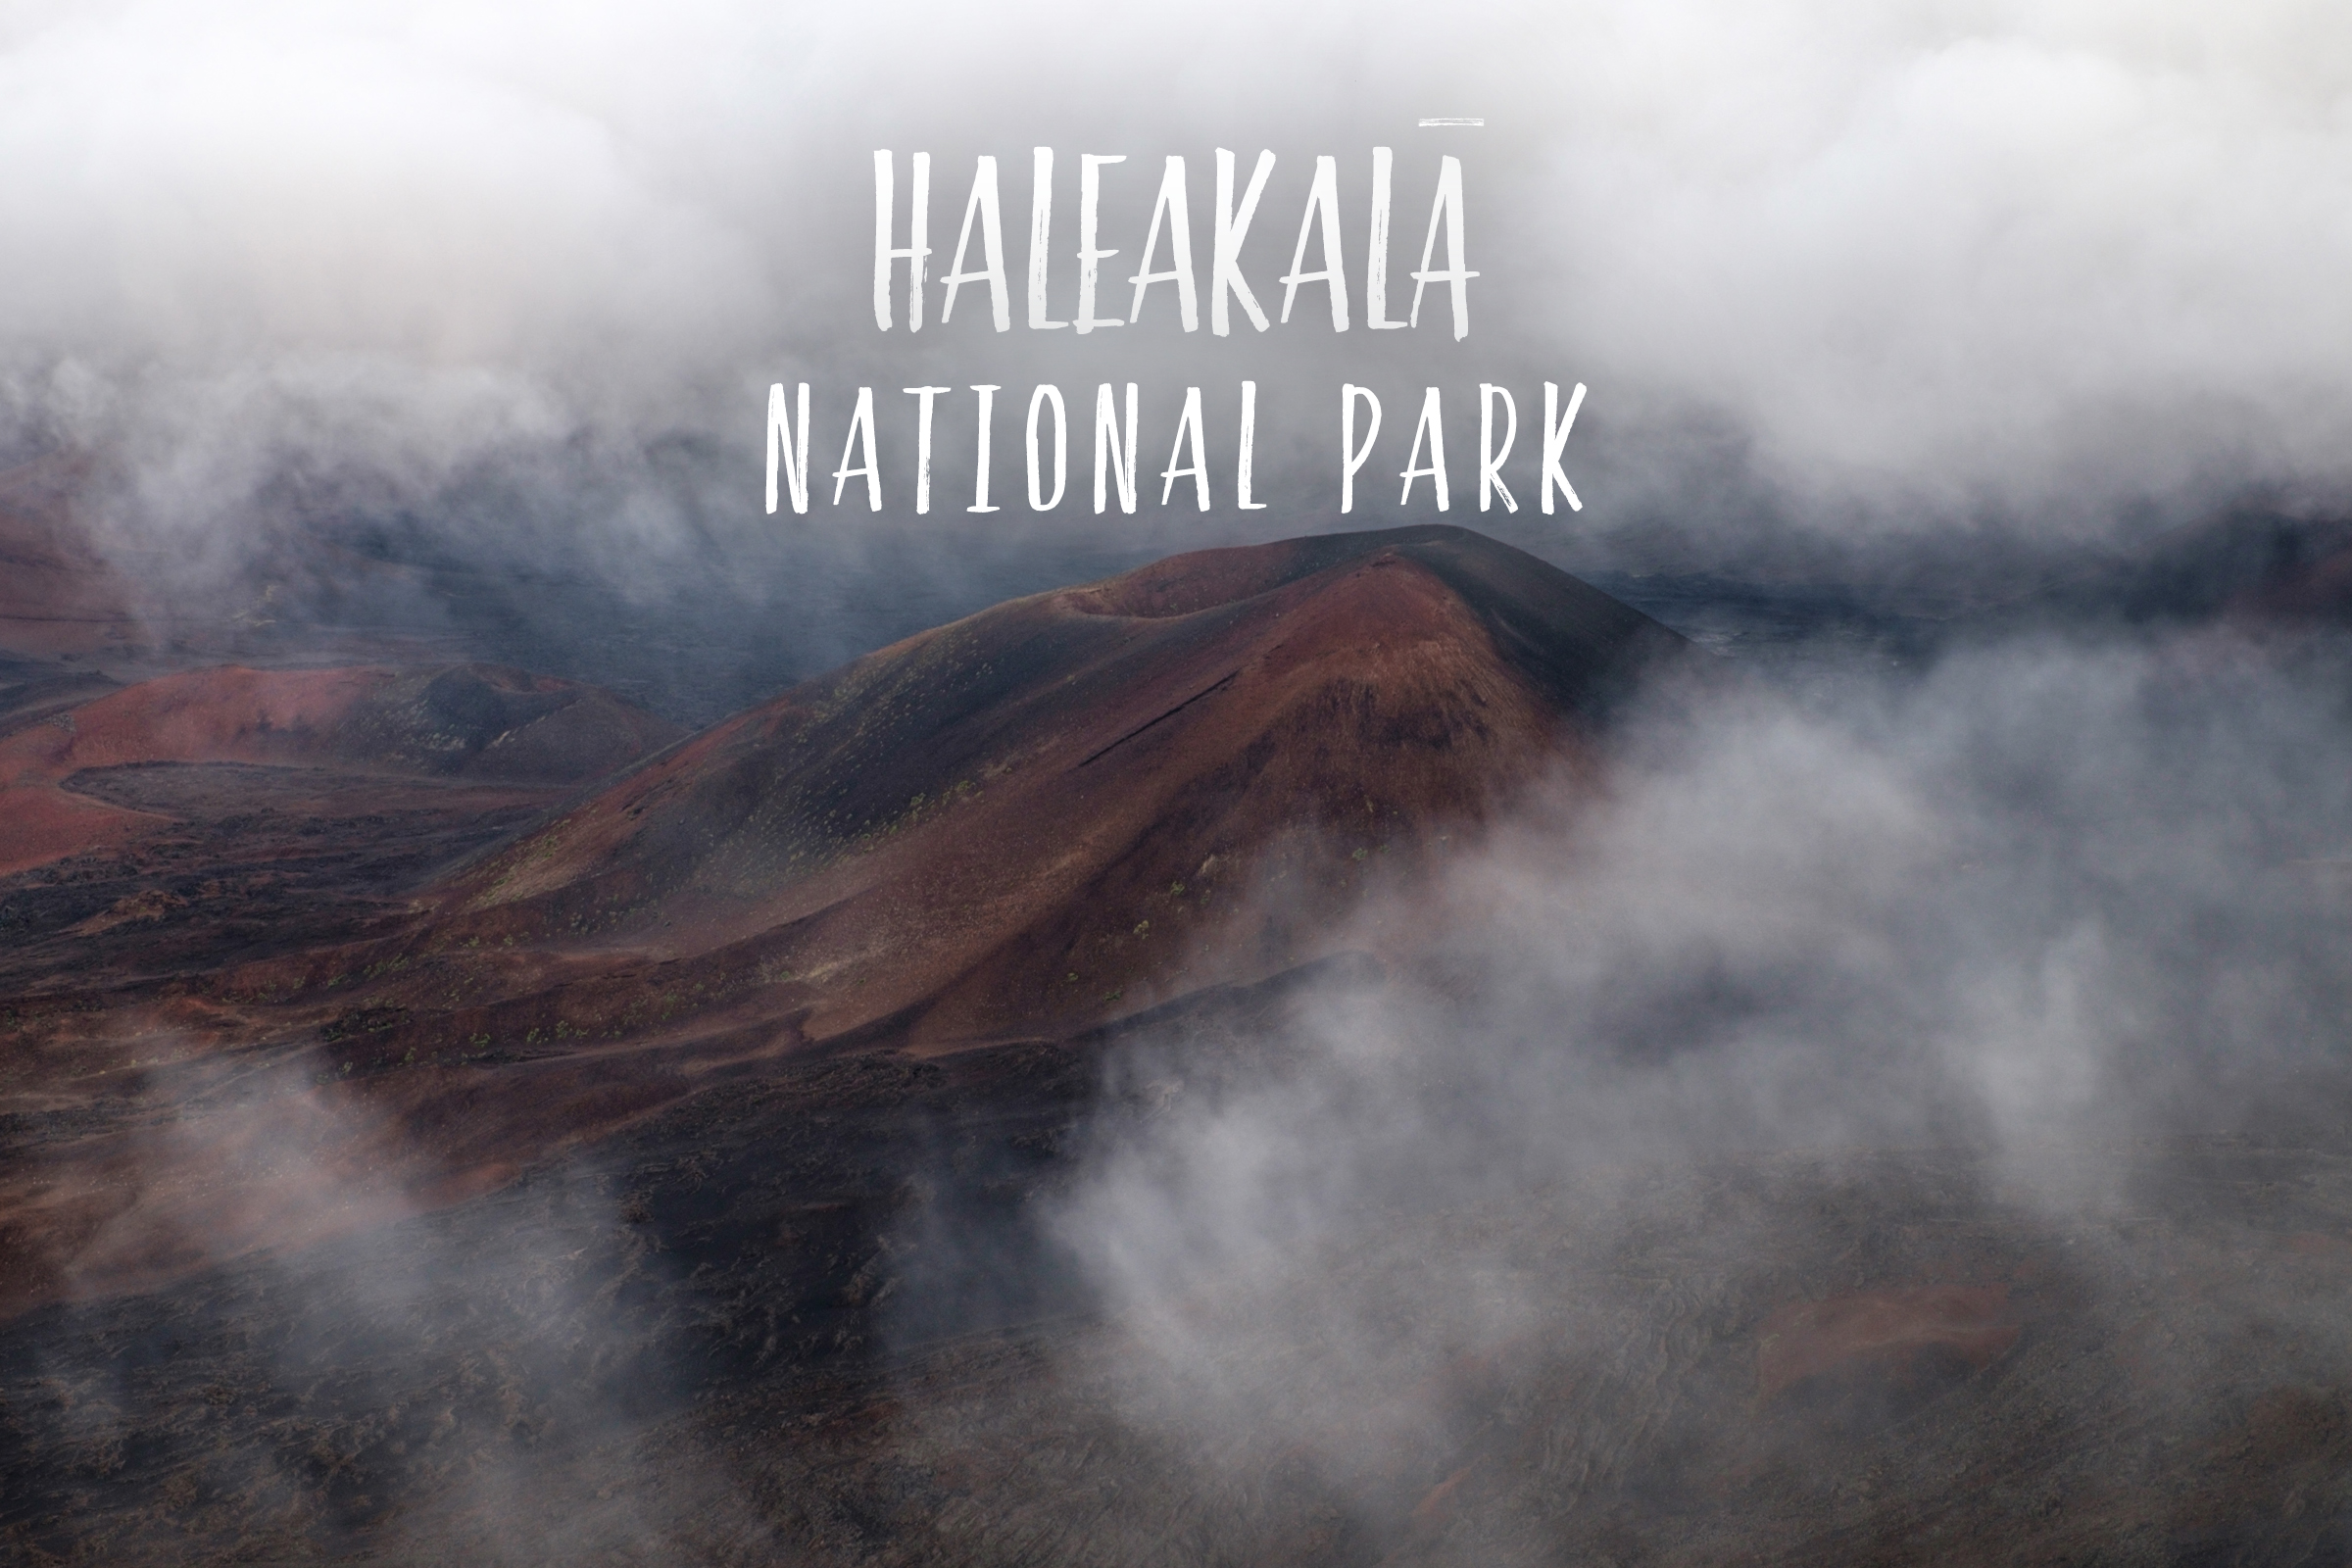 Park 55/59: Haleakala National Park on the island of Maui, Islands of Hawai'i